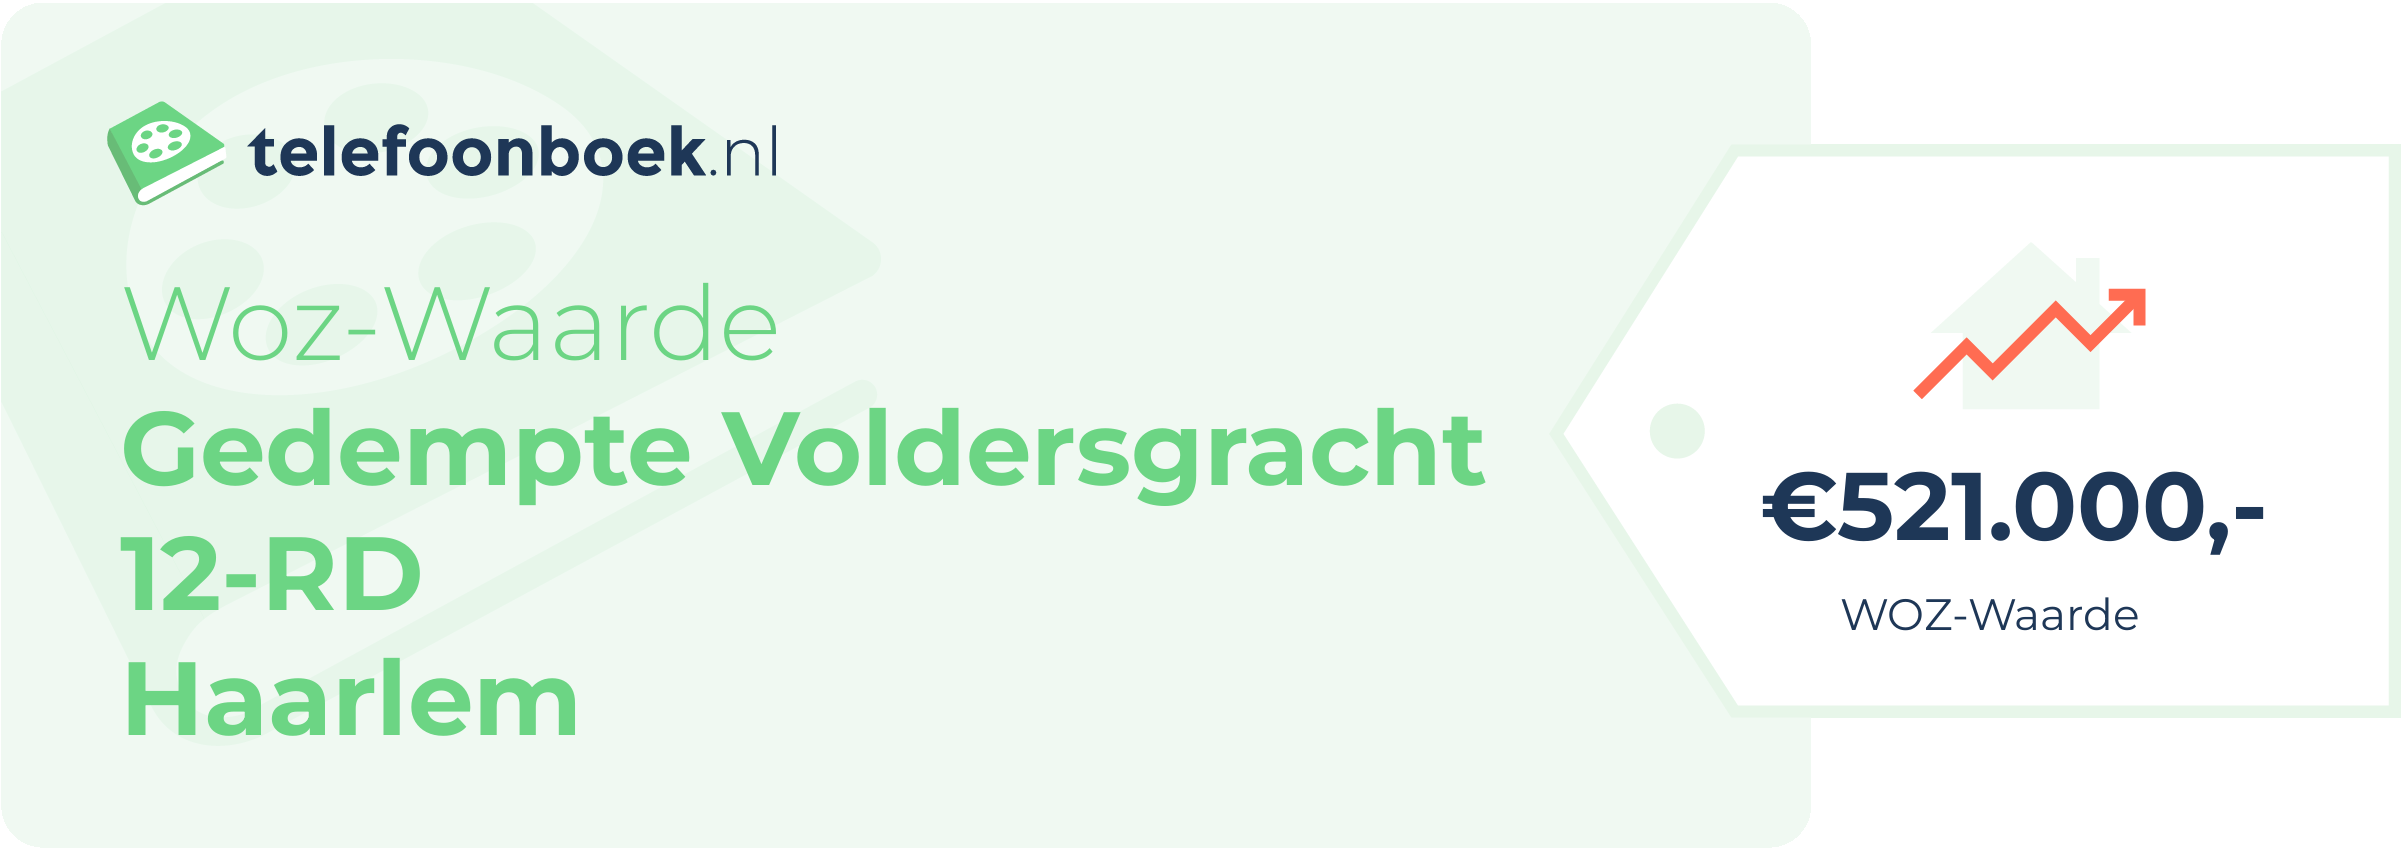 WOZ-waarde Gedempte Voldersgracht 12-RD Haarlem